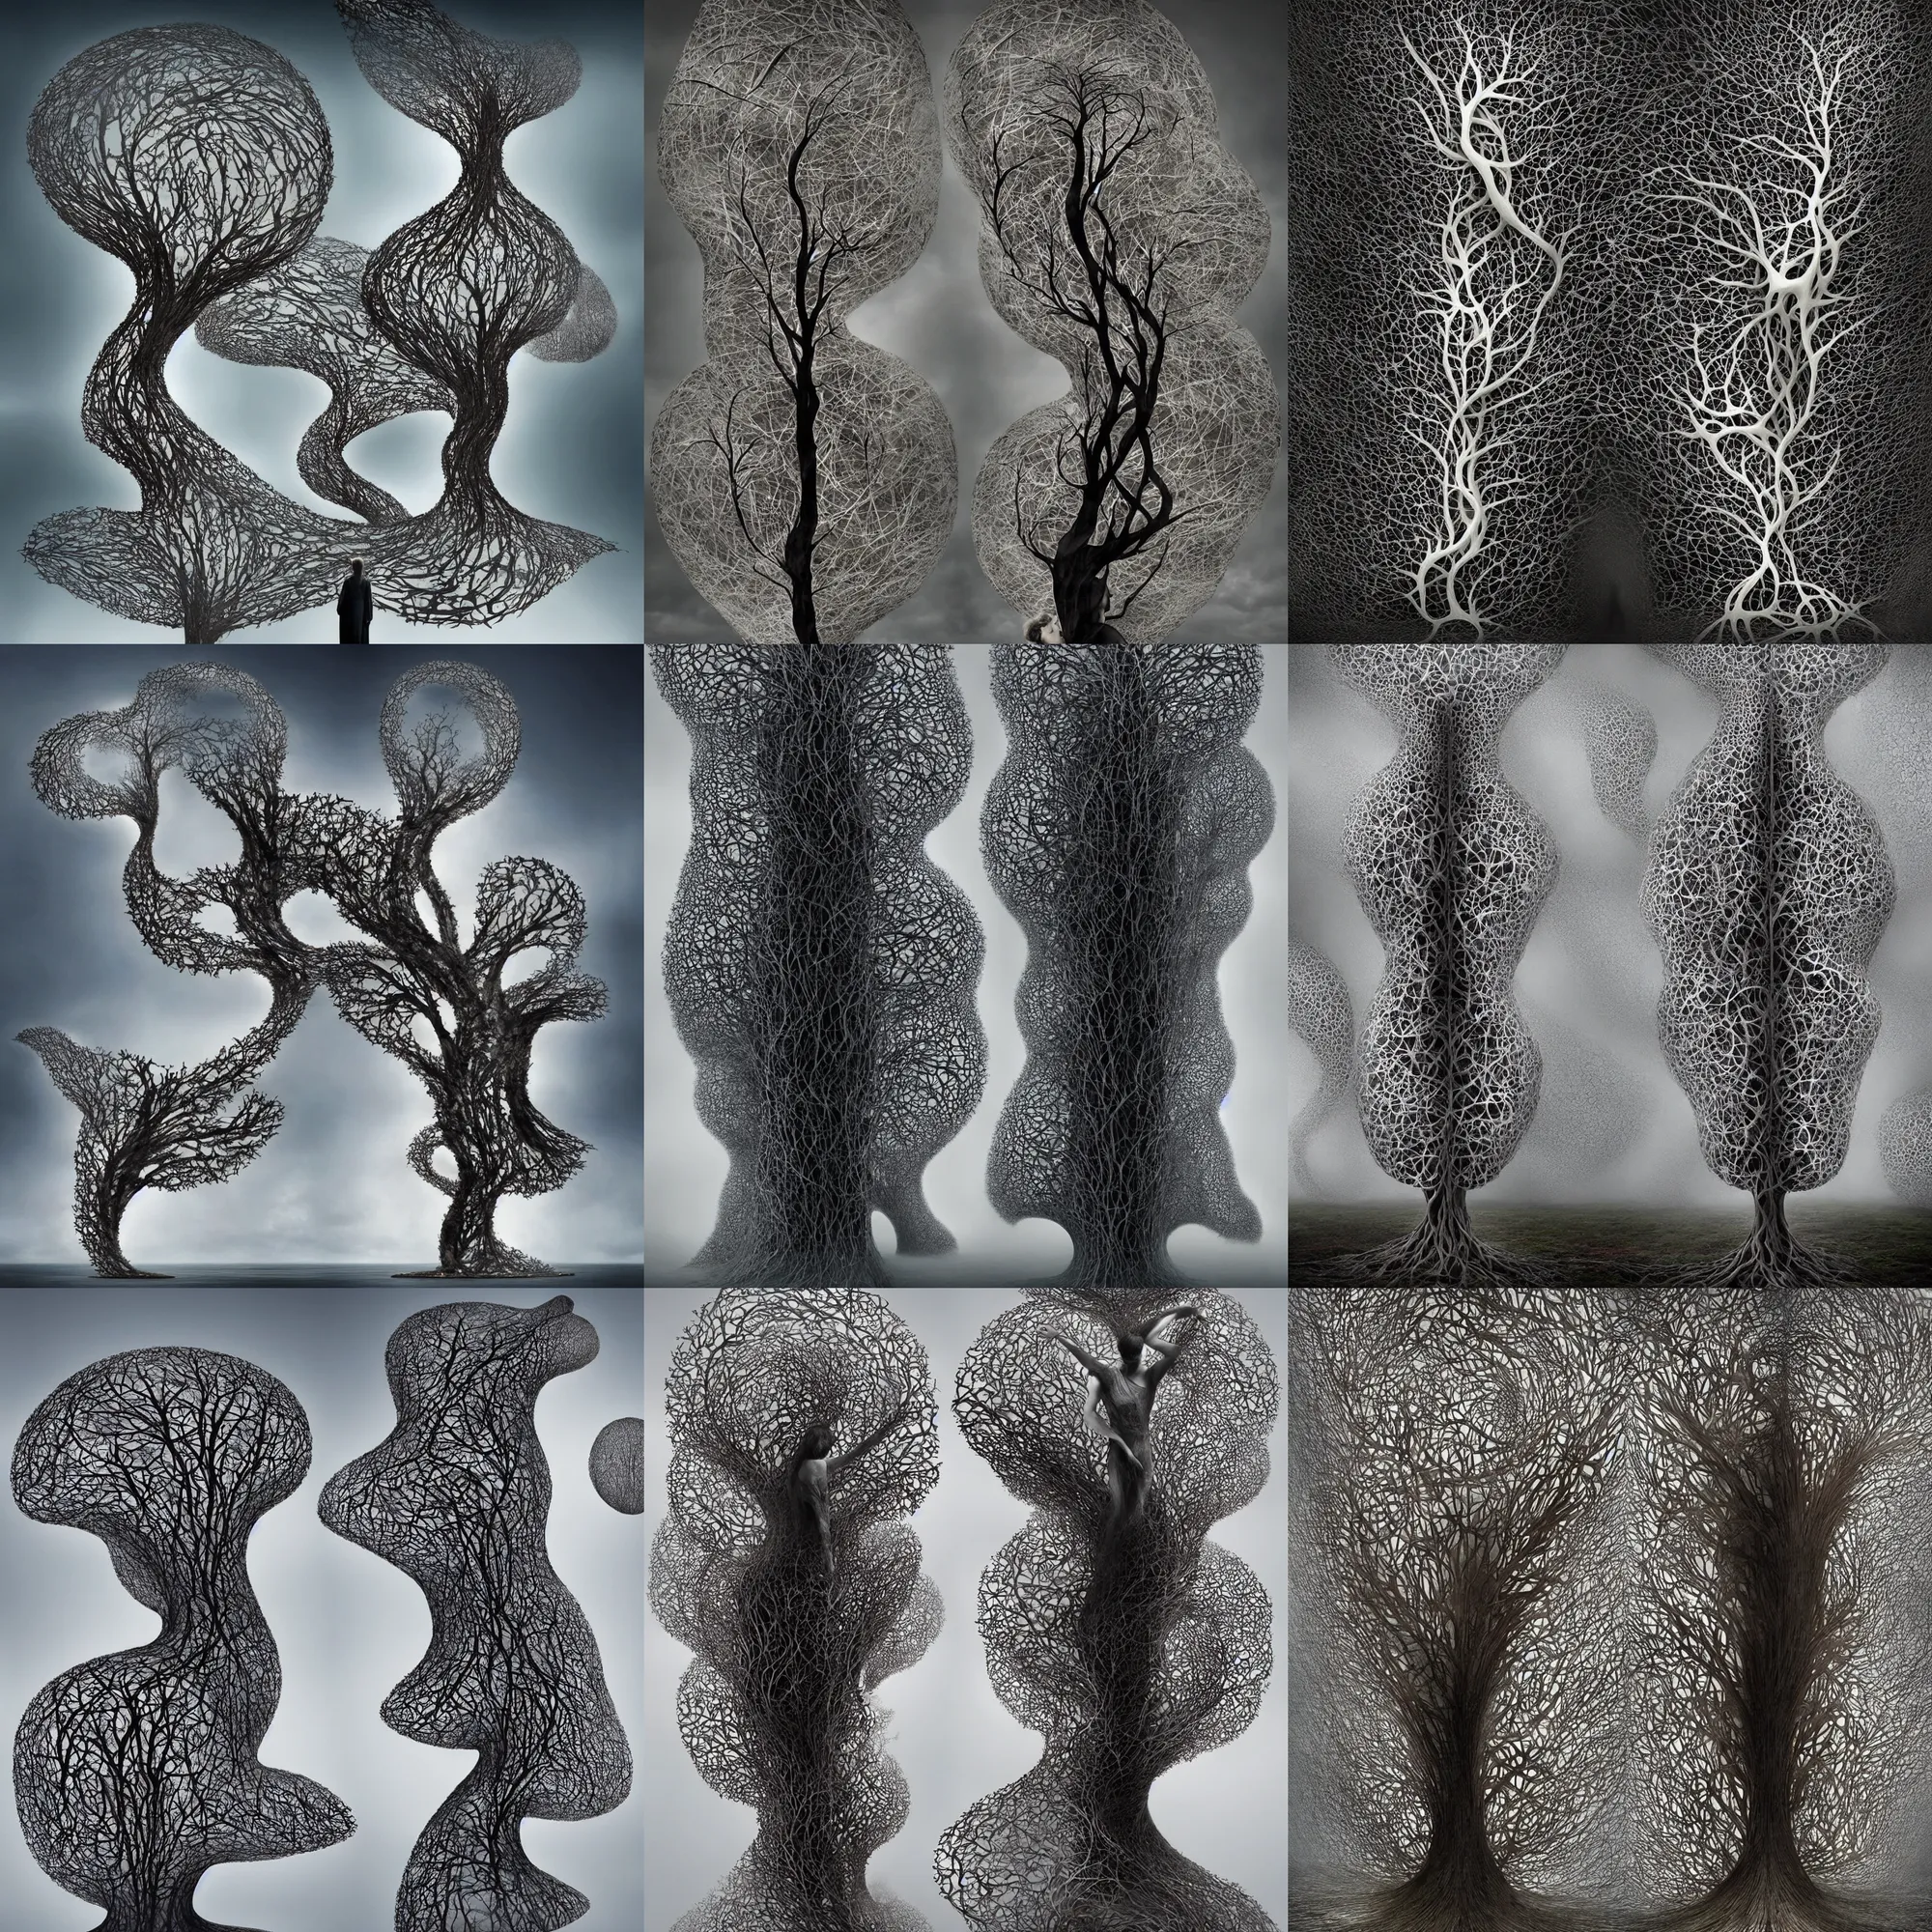 Prompt: infinity l - tree fractal by ingrid baars, erik johansson, kim keever,